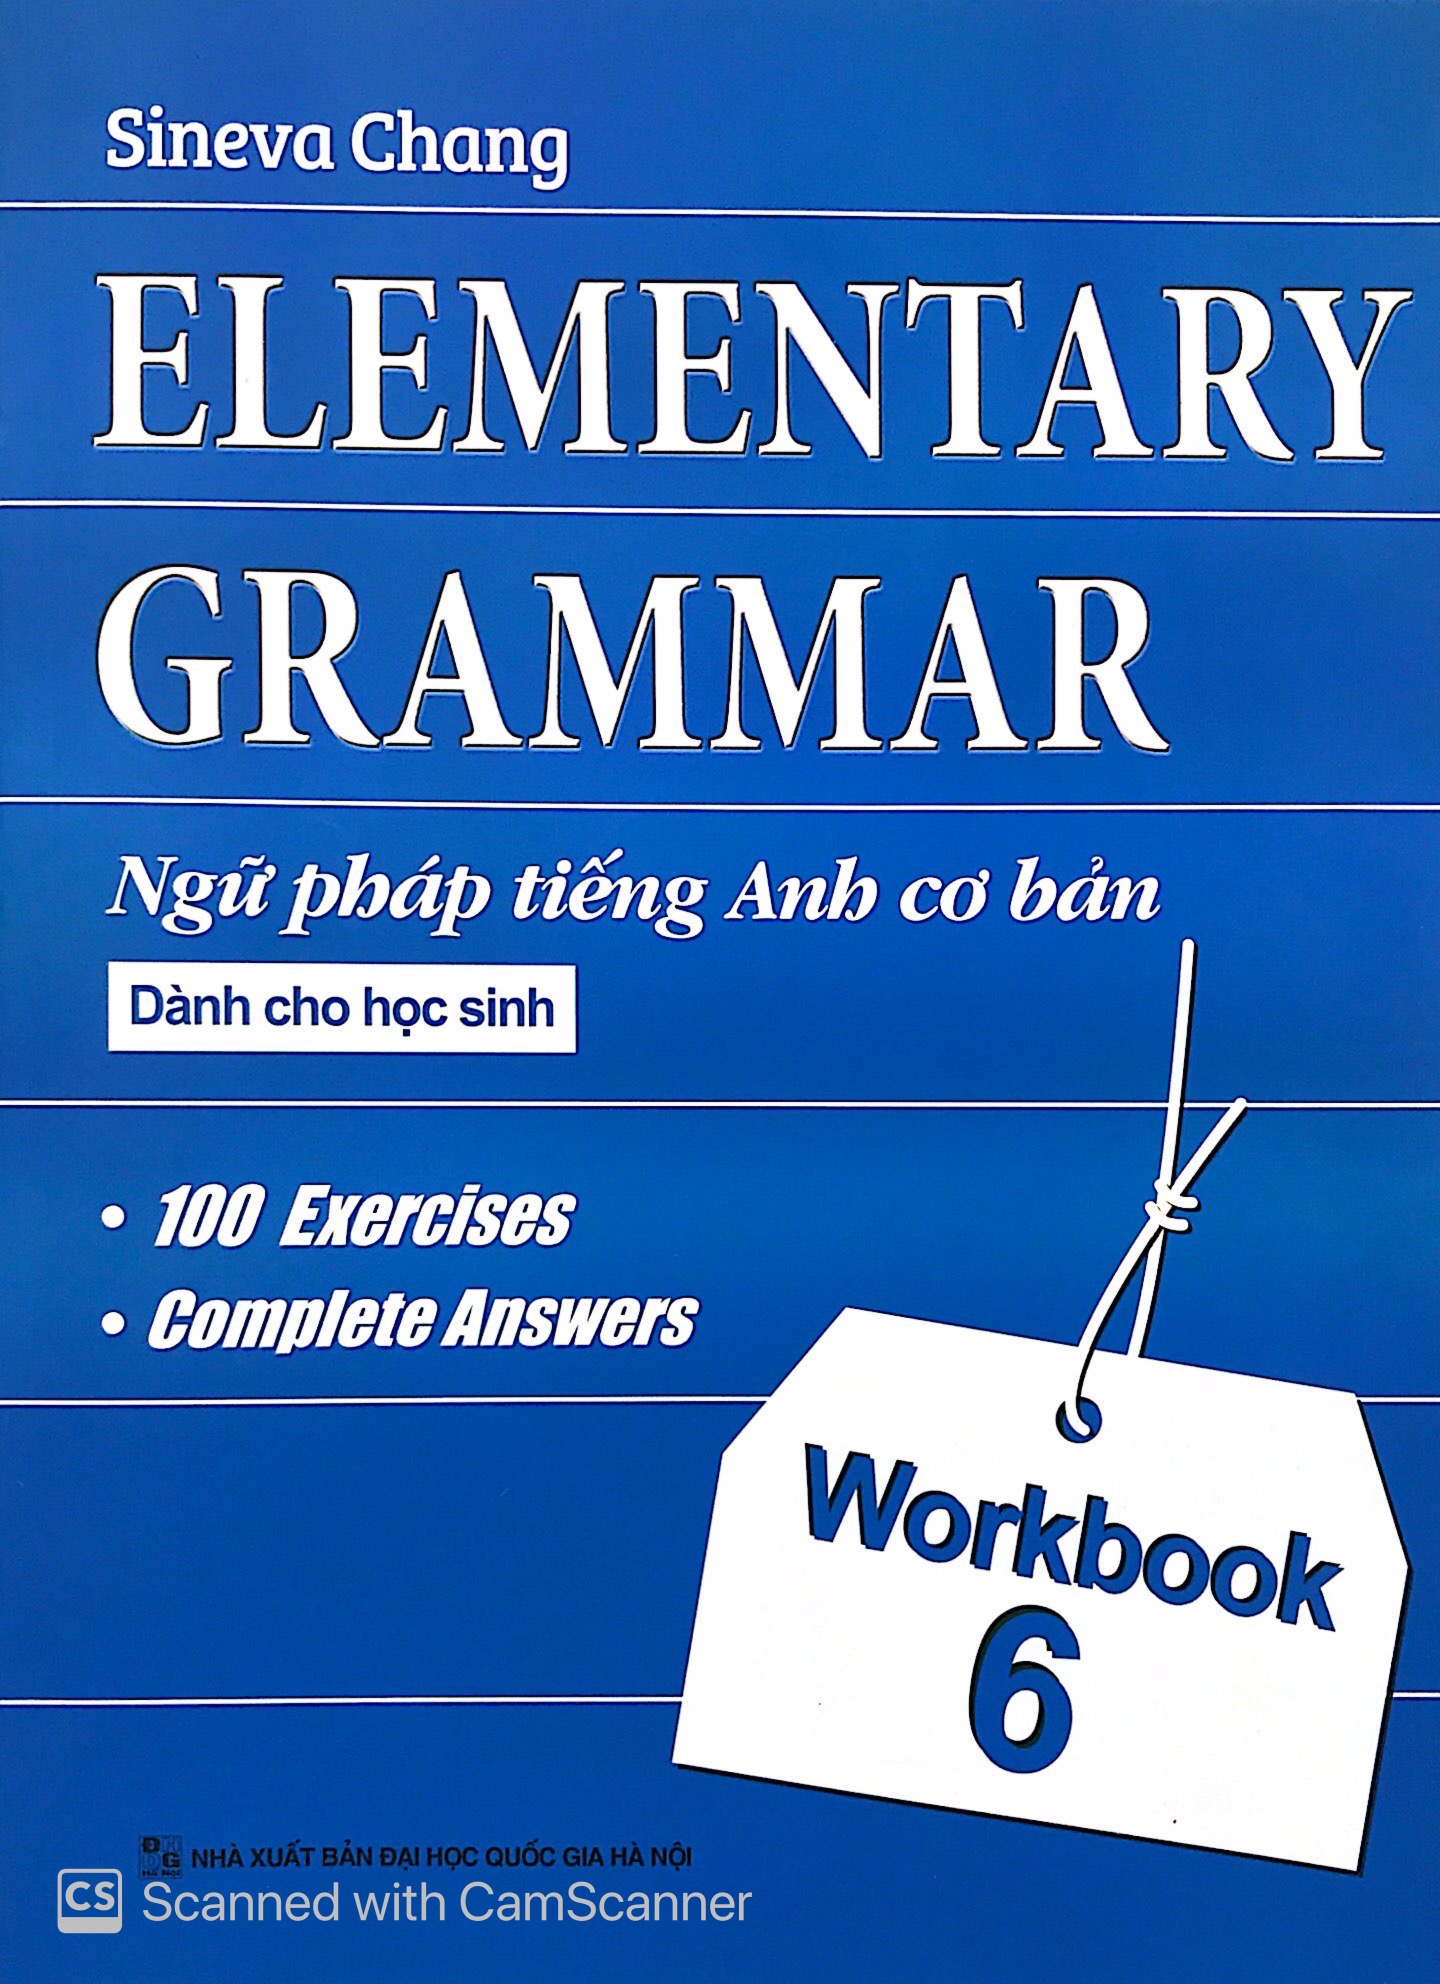 Elementary Grammar - Ngữ Pháp Tiếng Anh Cơ Bản Dành Cho Học Sinh Workbook 6 PDF